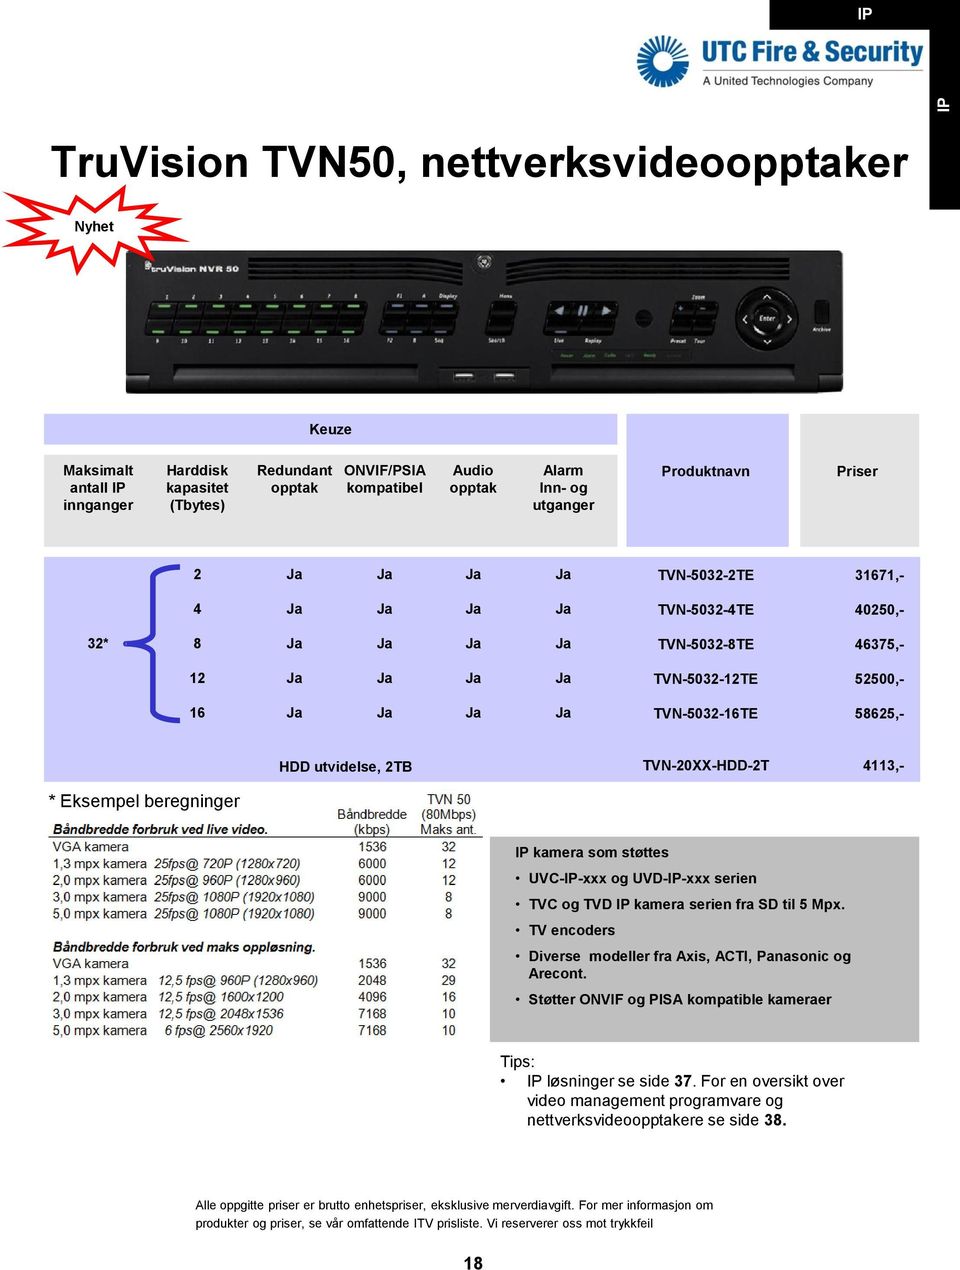 TVN-20-HDD-2T 4113,- * Eksempel beregninger kamera som støttes UVC--xxx og UVD--xxx serien TVC og TVD kamera serien fra SD til 5 Mpx.